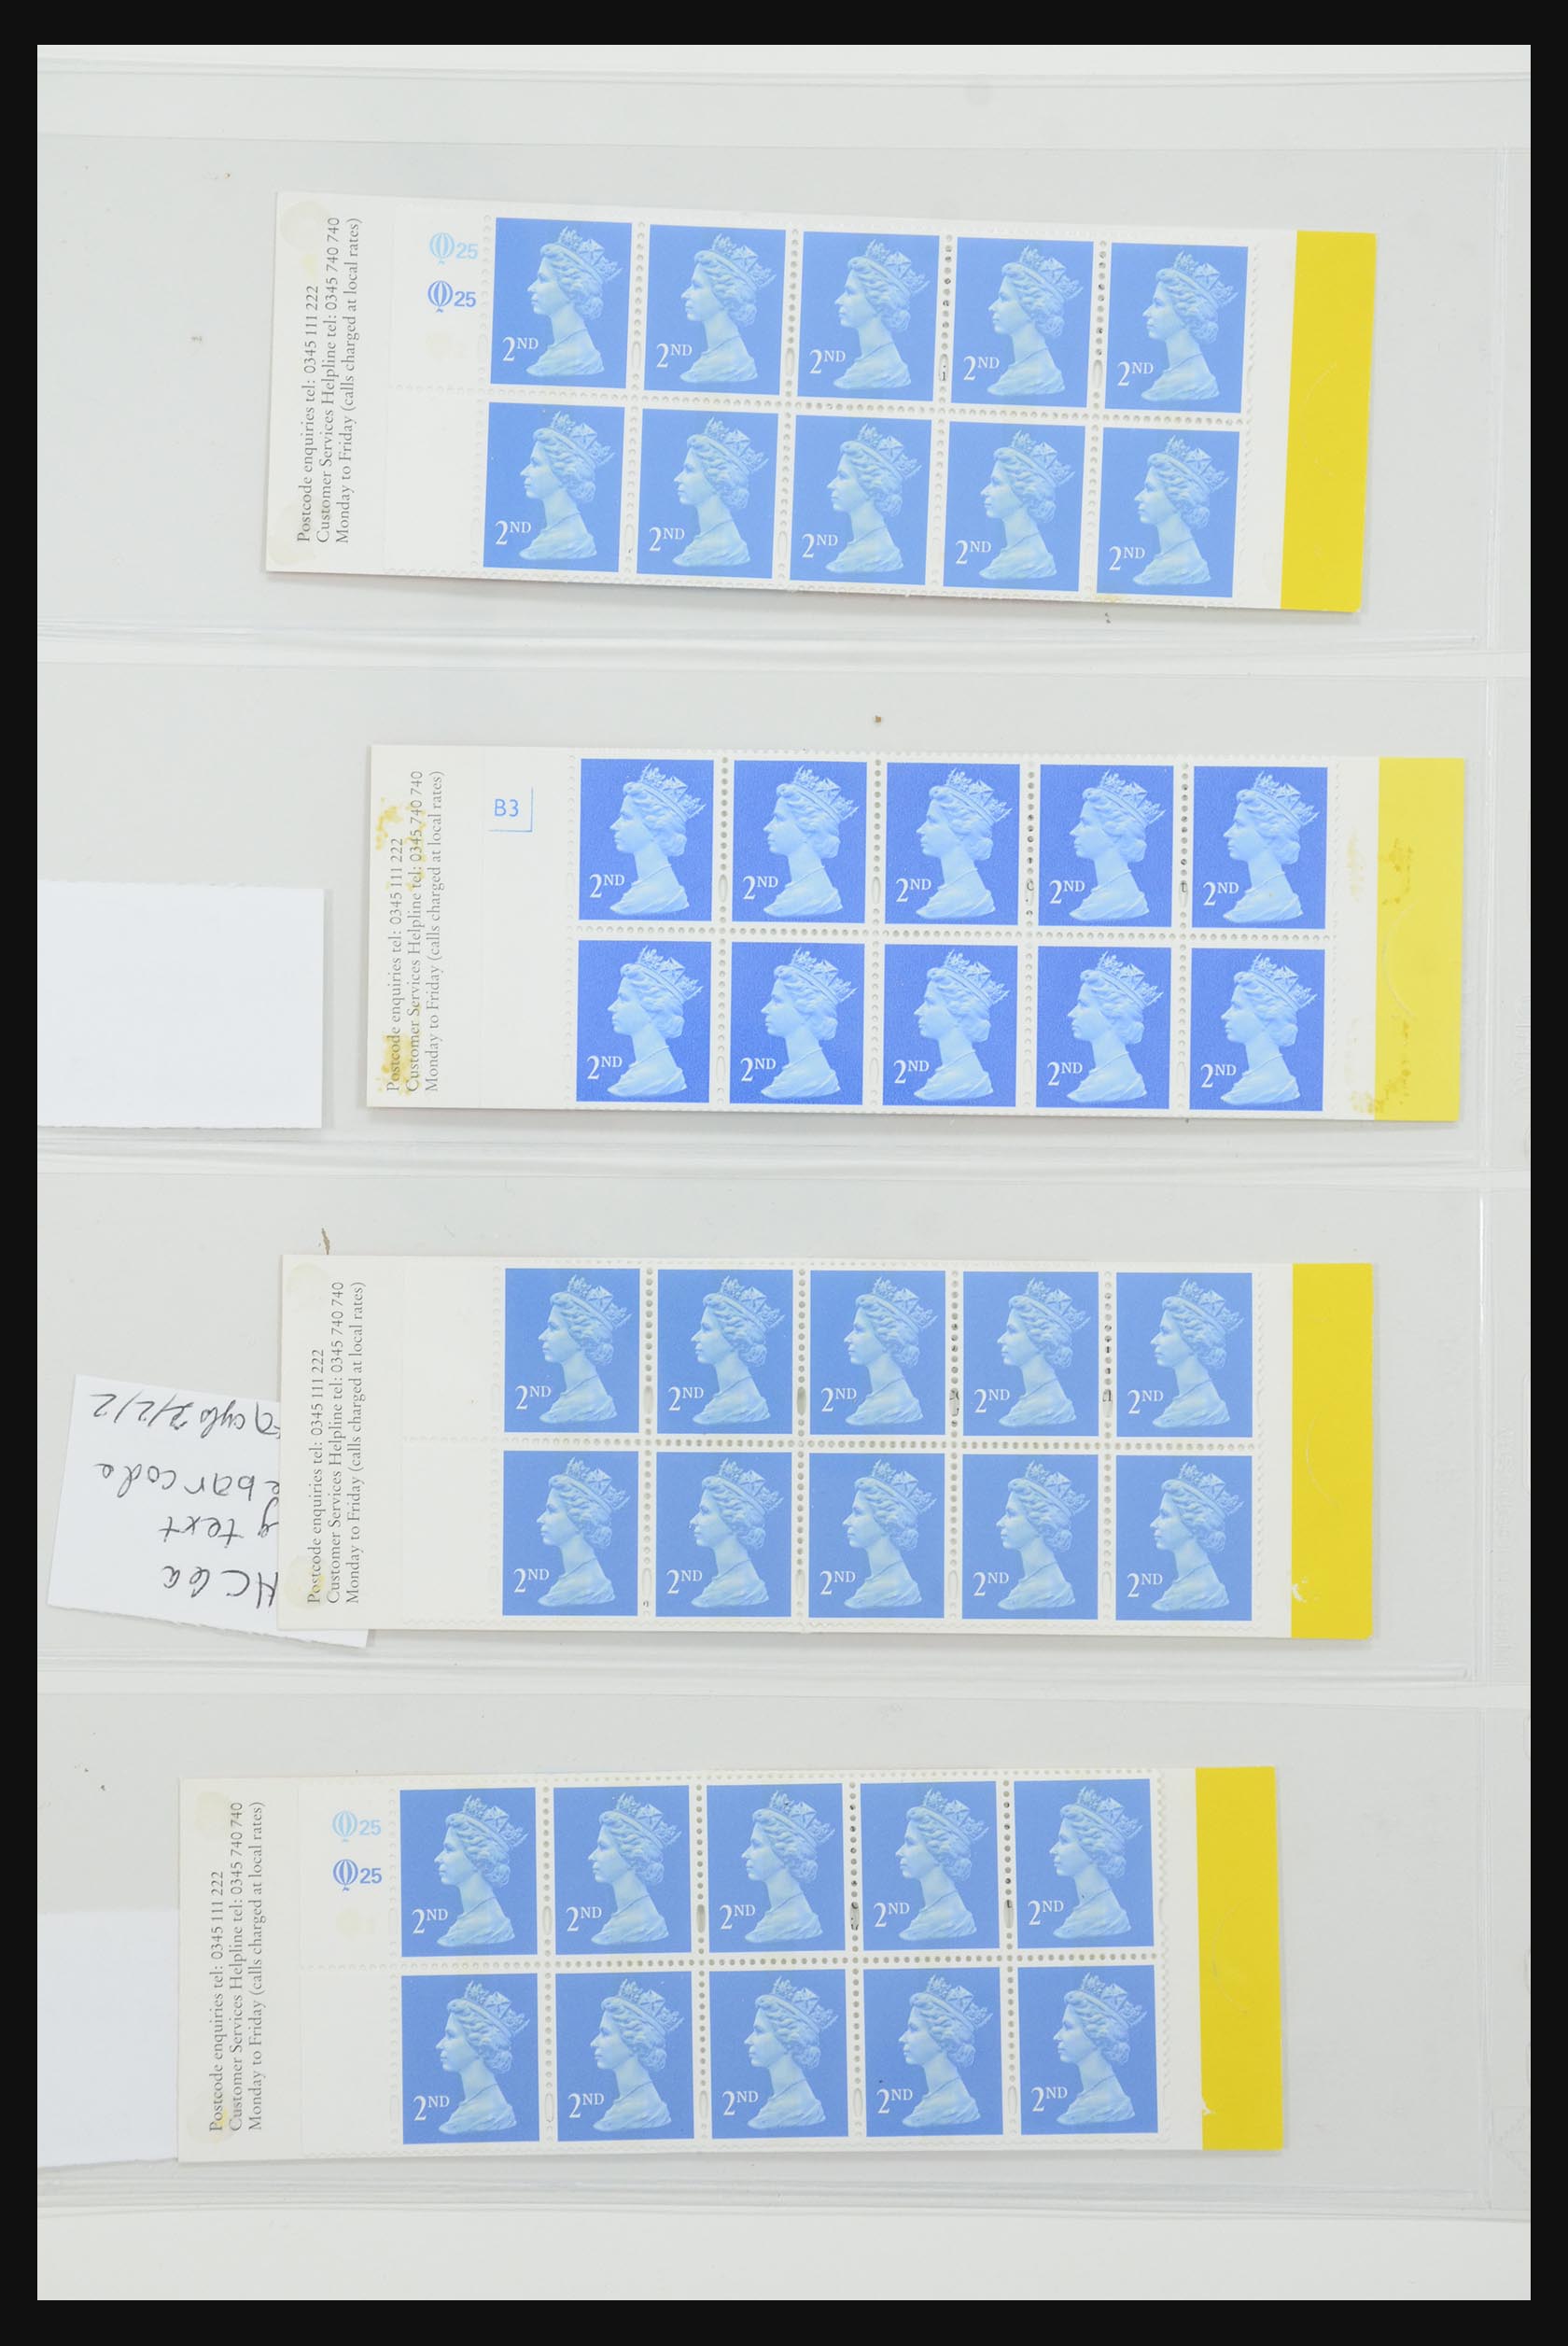 31959 252 - 31959 Engeland postzegelboekjes 1987-2016!!